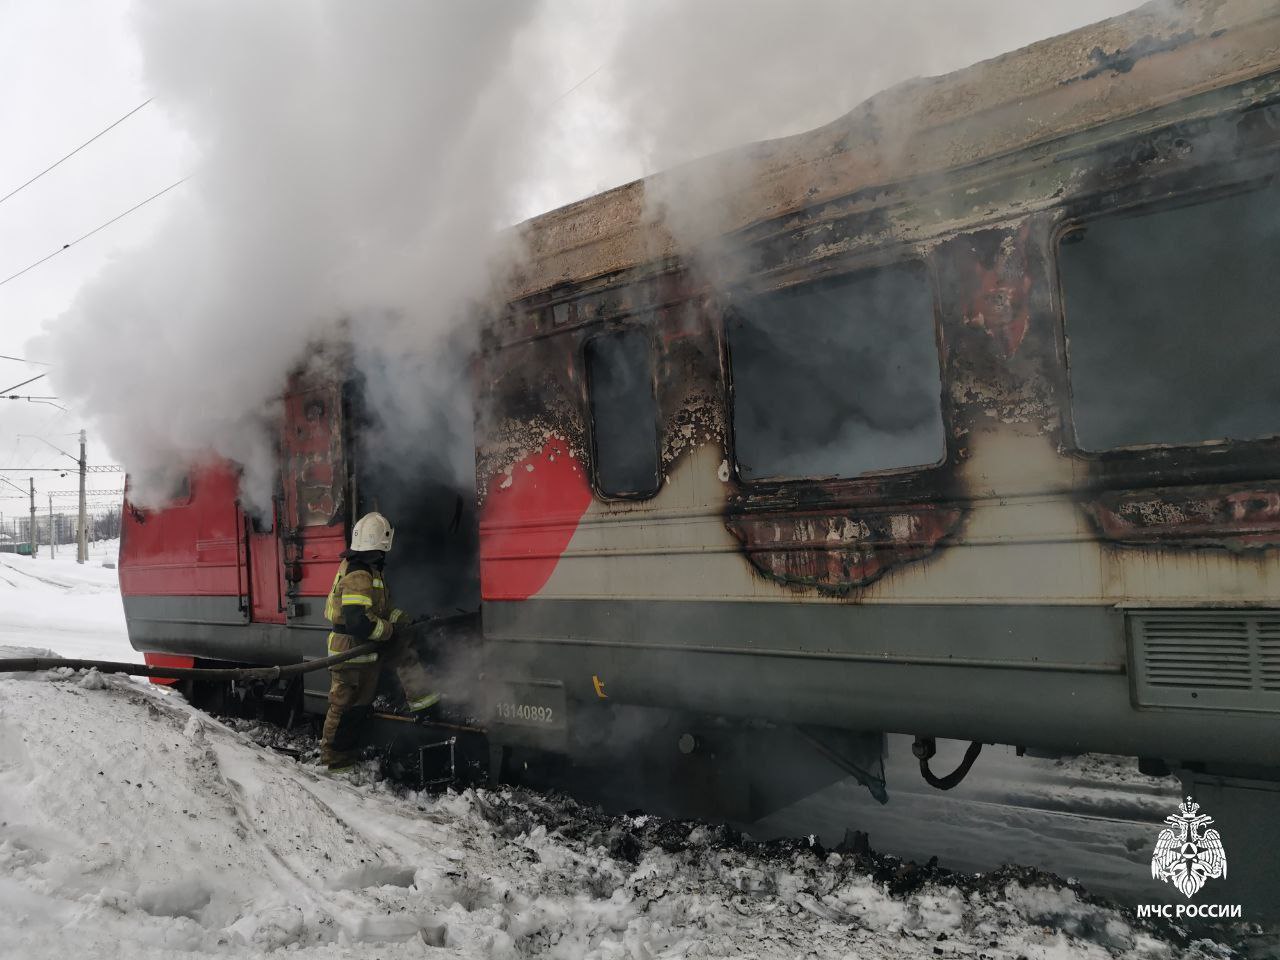 На железнодорожной станции в Башкирии загорелся локомотив. Машинист успел эвакуироваться